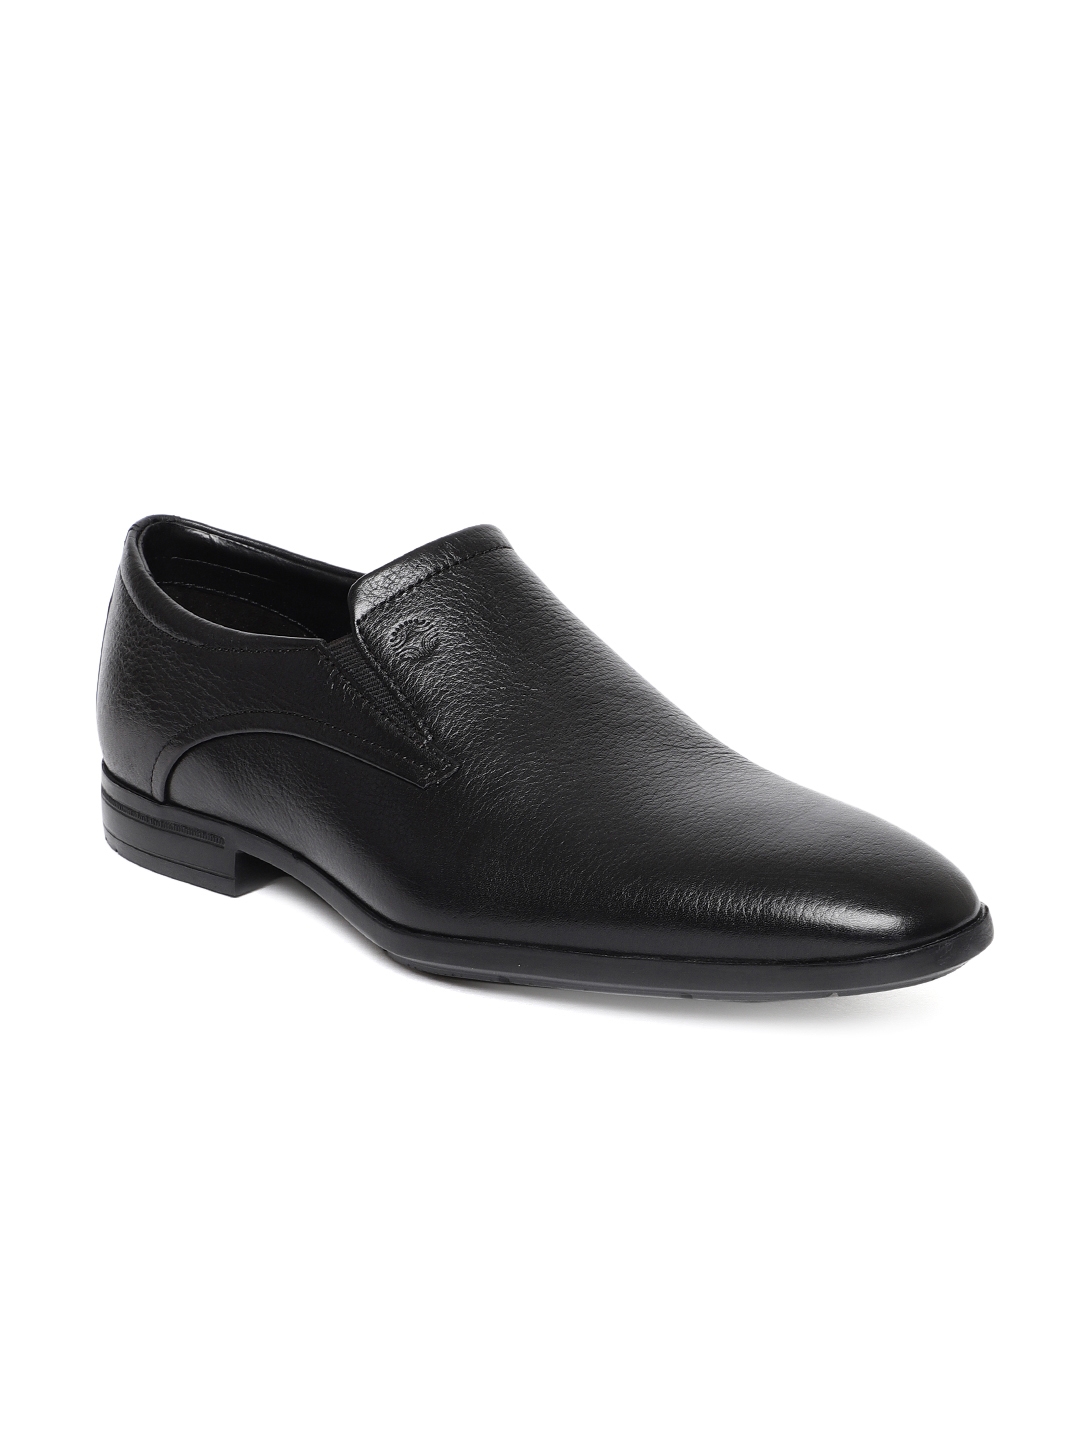 mens black slip on formal shoes